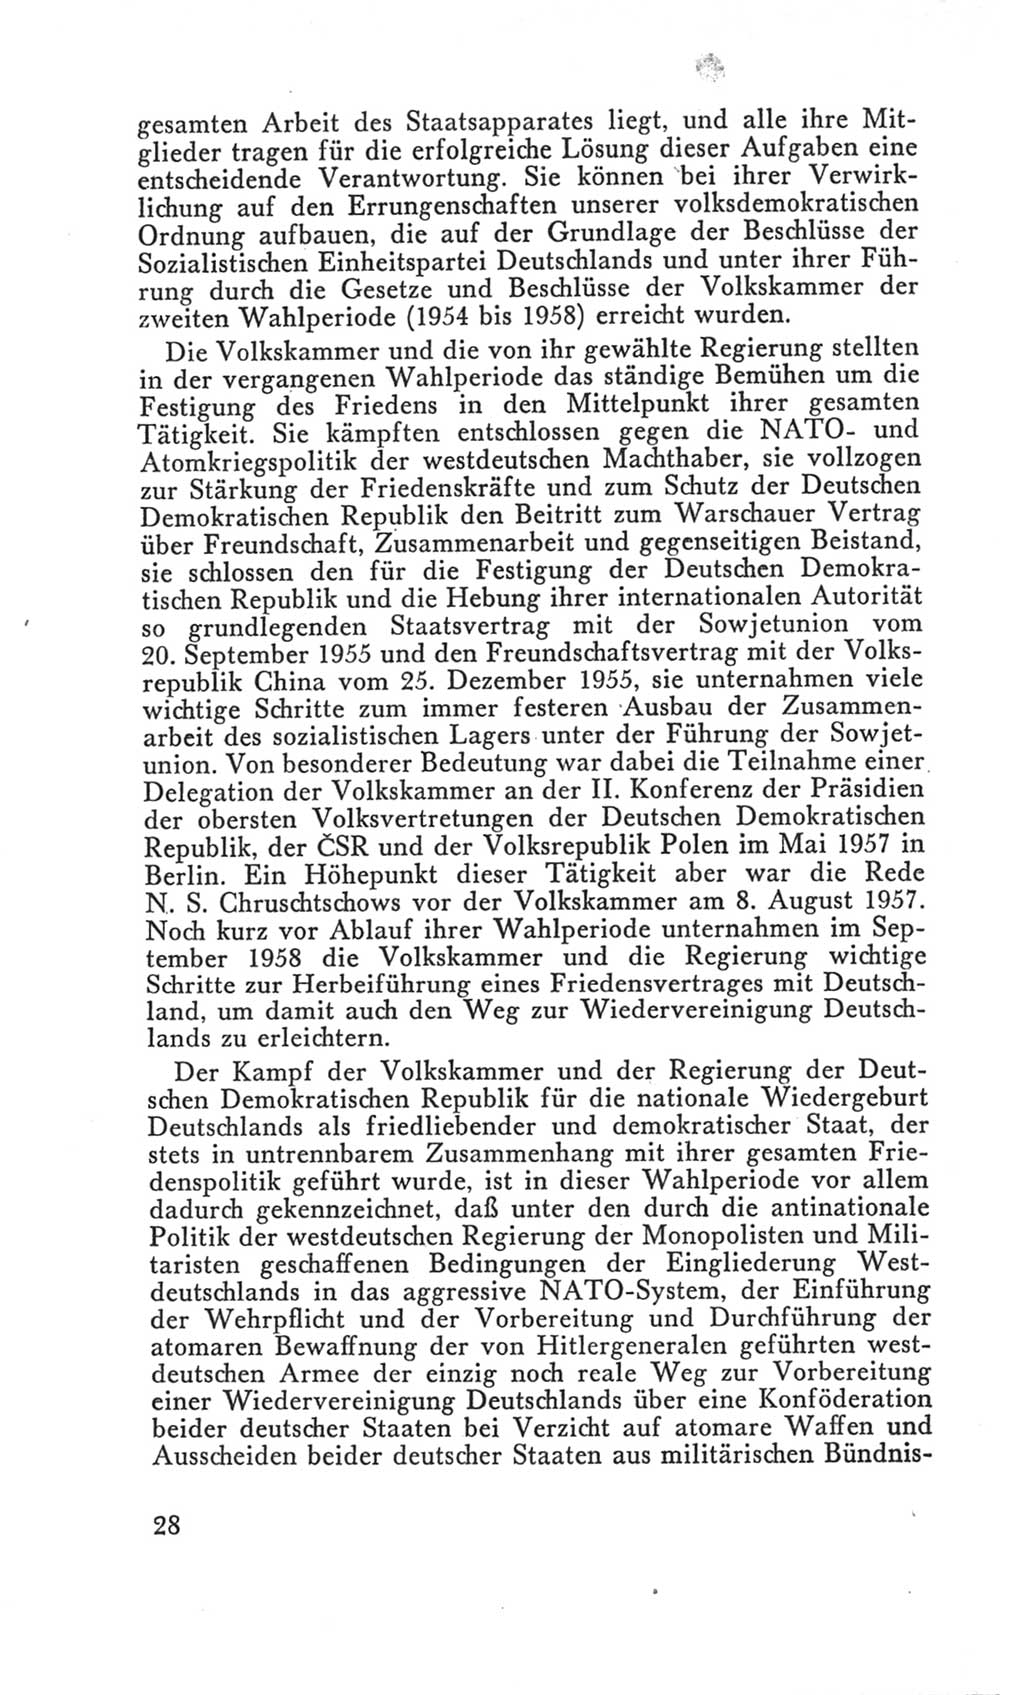 Handbuch der Volkskammer (VK) der Deutschen Demokratischen Republik (DDR), 3. Wahlperiode 1958-1963, Seite 28 (Hdb. VK. DDR 3. WP. 1958-1963, S. 28)